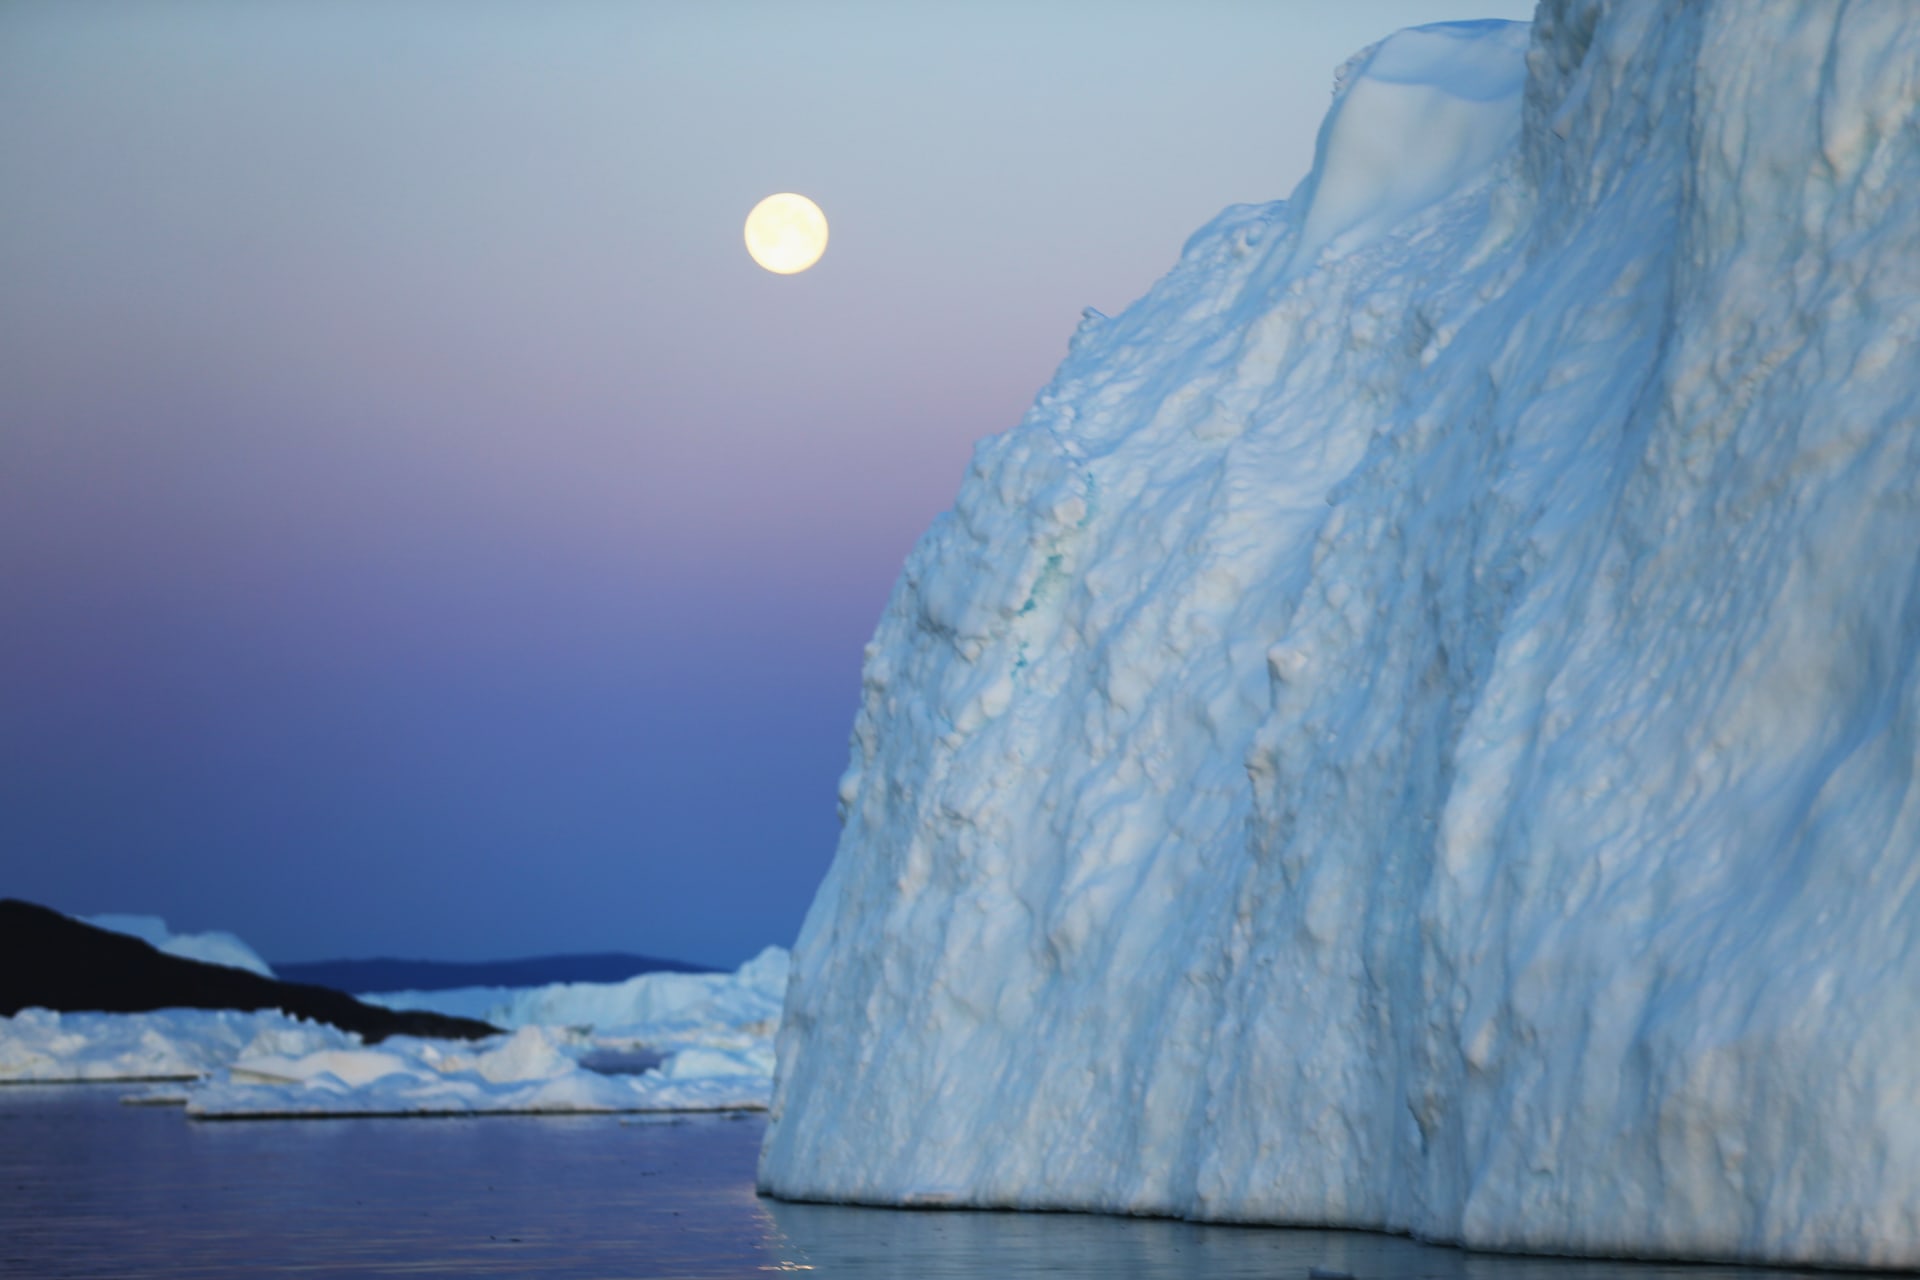 دراسة: تفاعل المد والجزر مع أحد أنهار غرنلاند الجليدية قد يرفع من مستوى سطح البحر بشكل أسرع